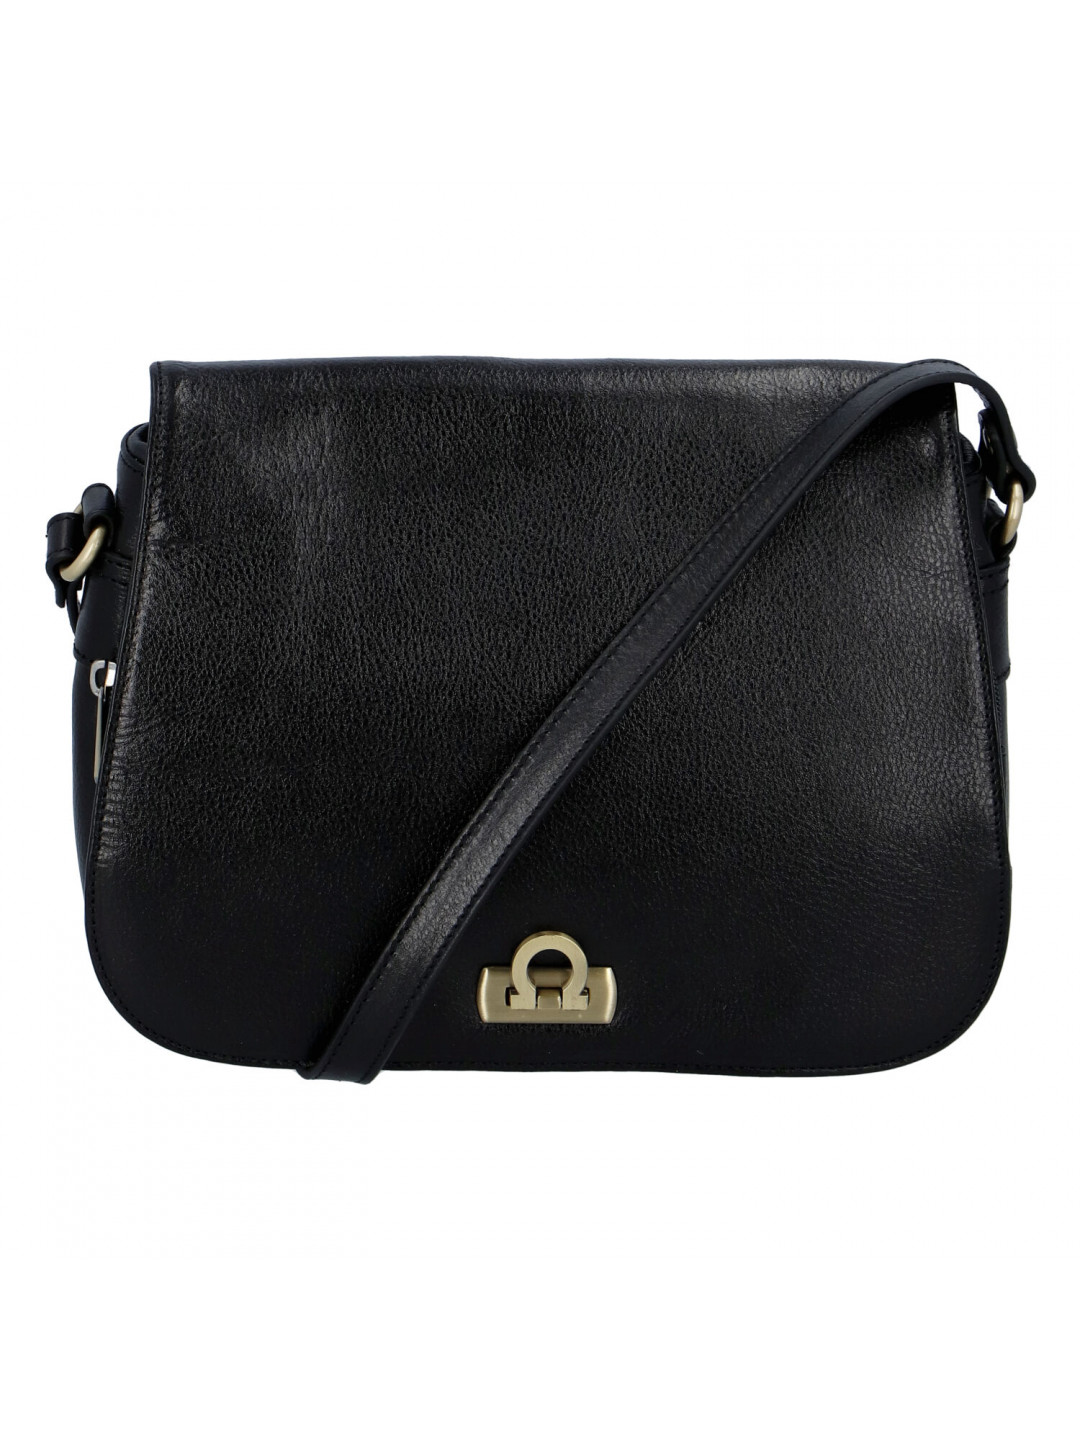 Luxusní dámská kožená kabelka černá – Hexagona Francesca